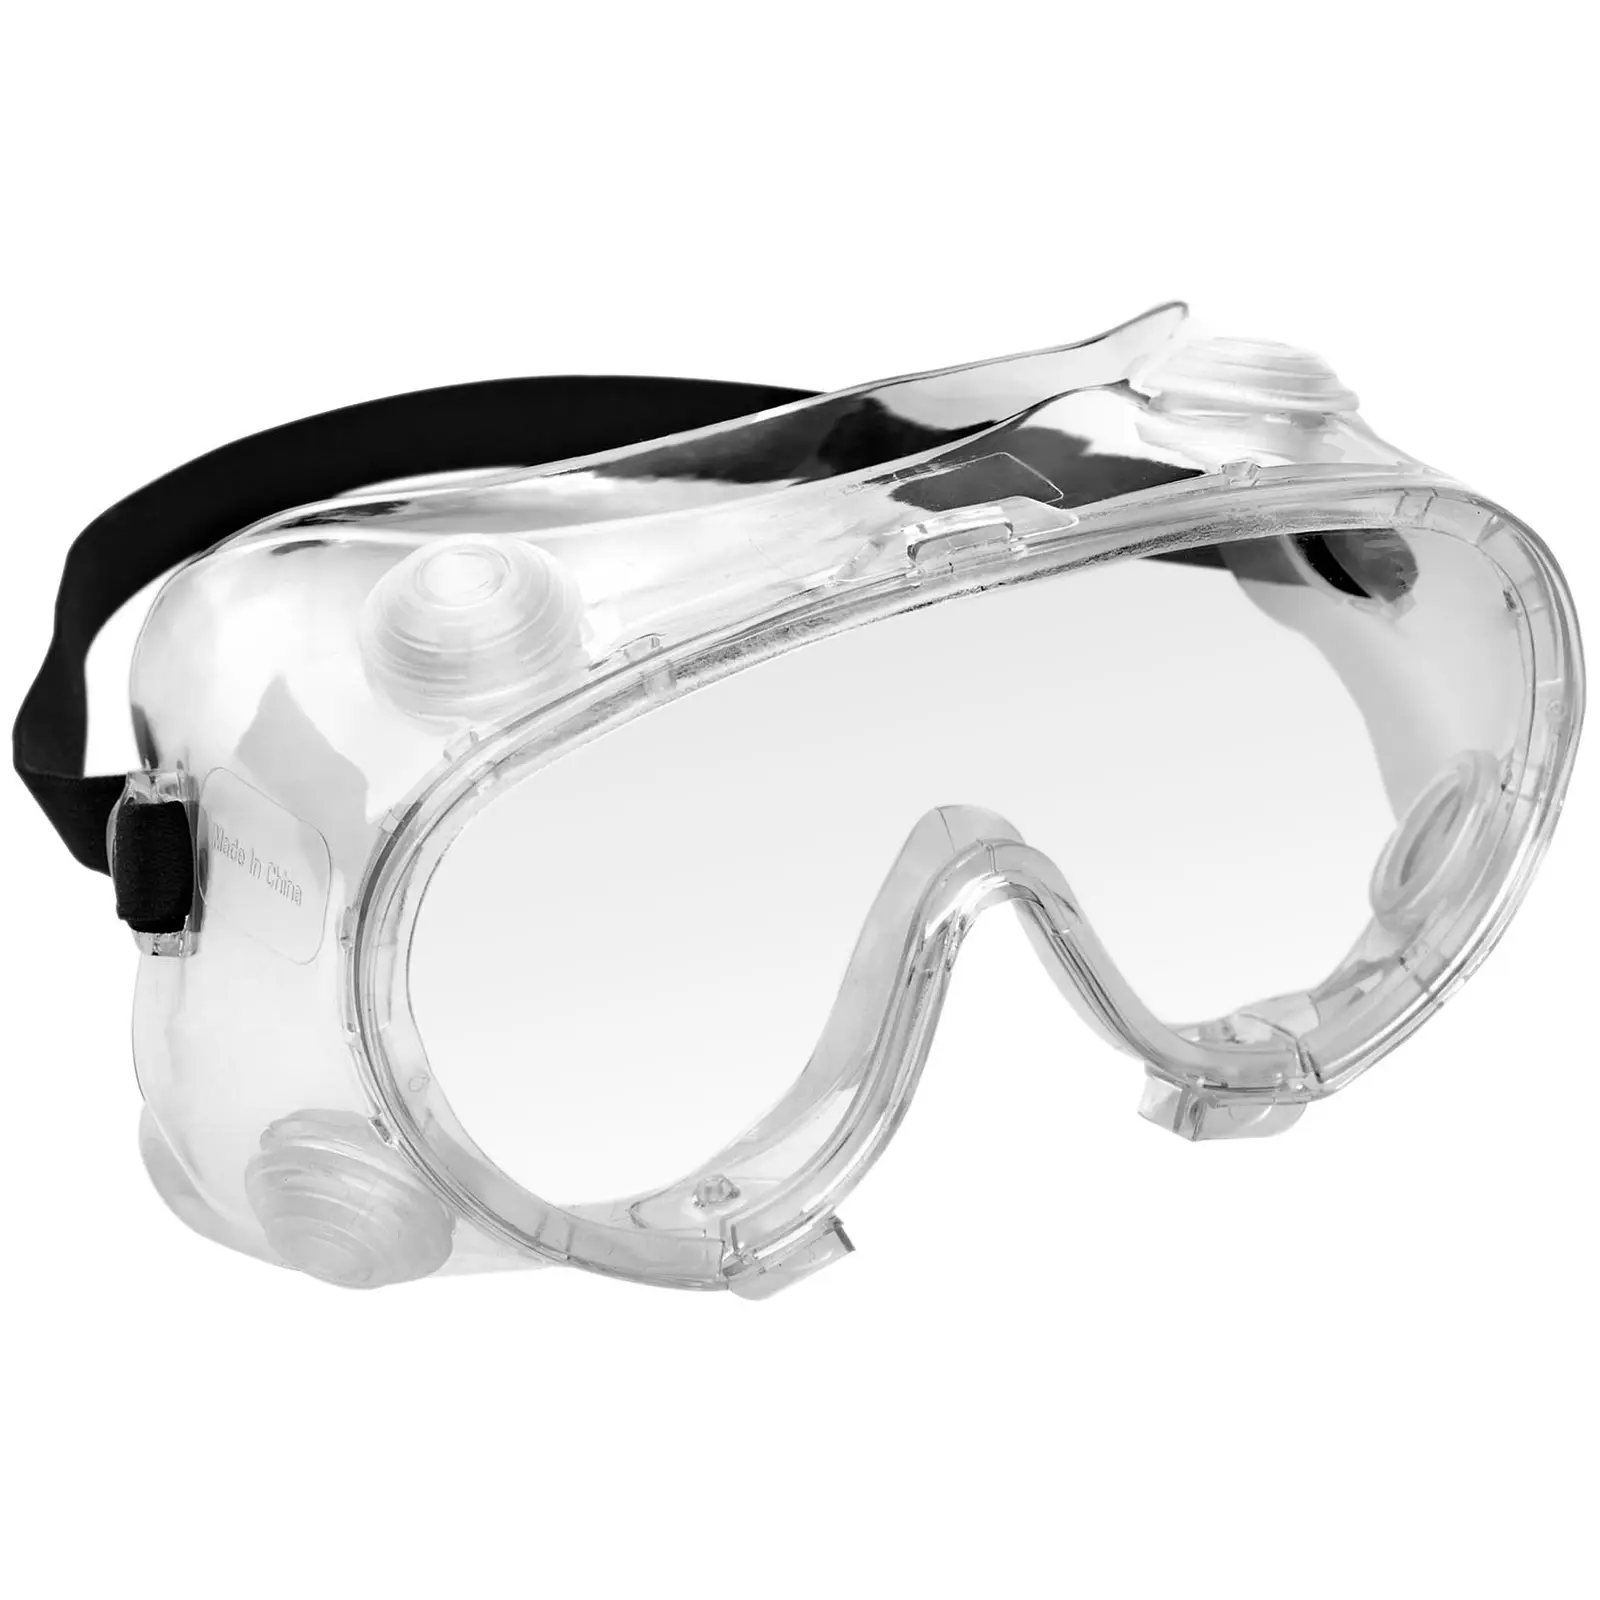 Skyddsglasögon - 10 st - klarsikt - enhetsstorlek